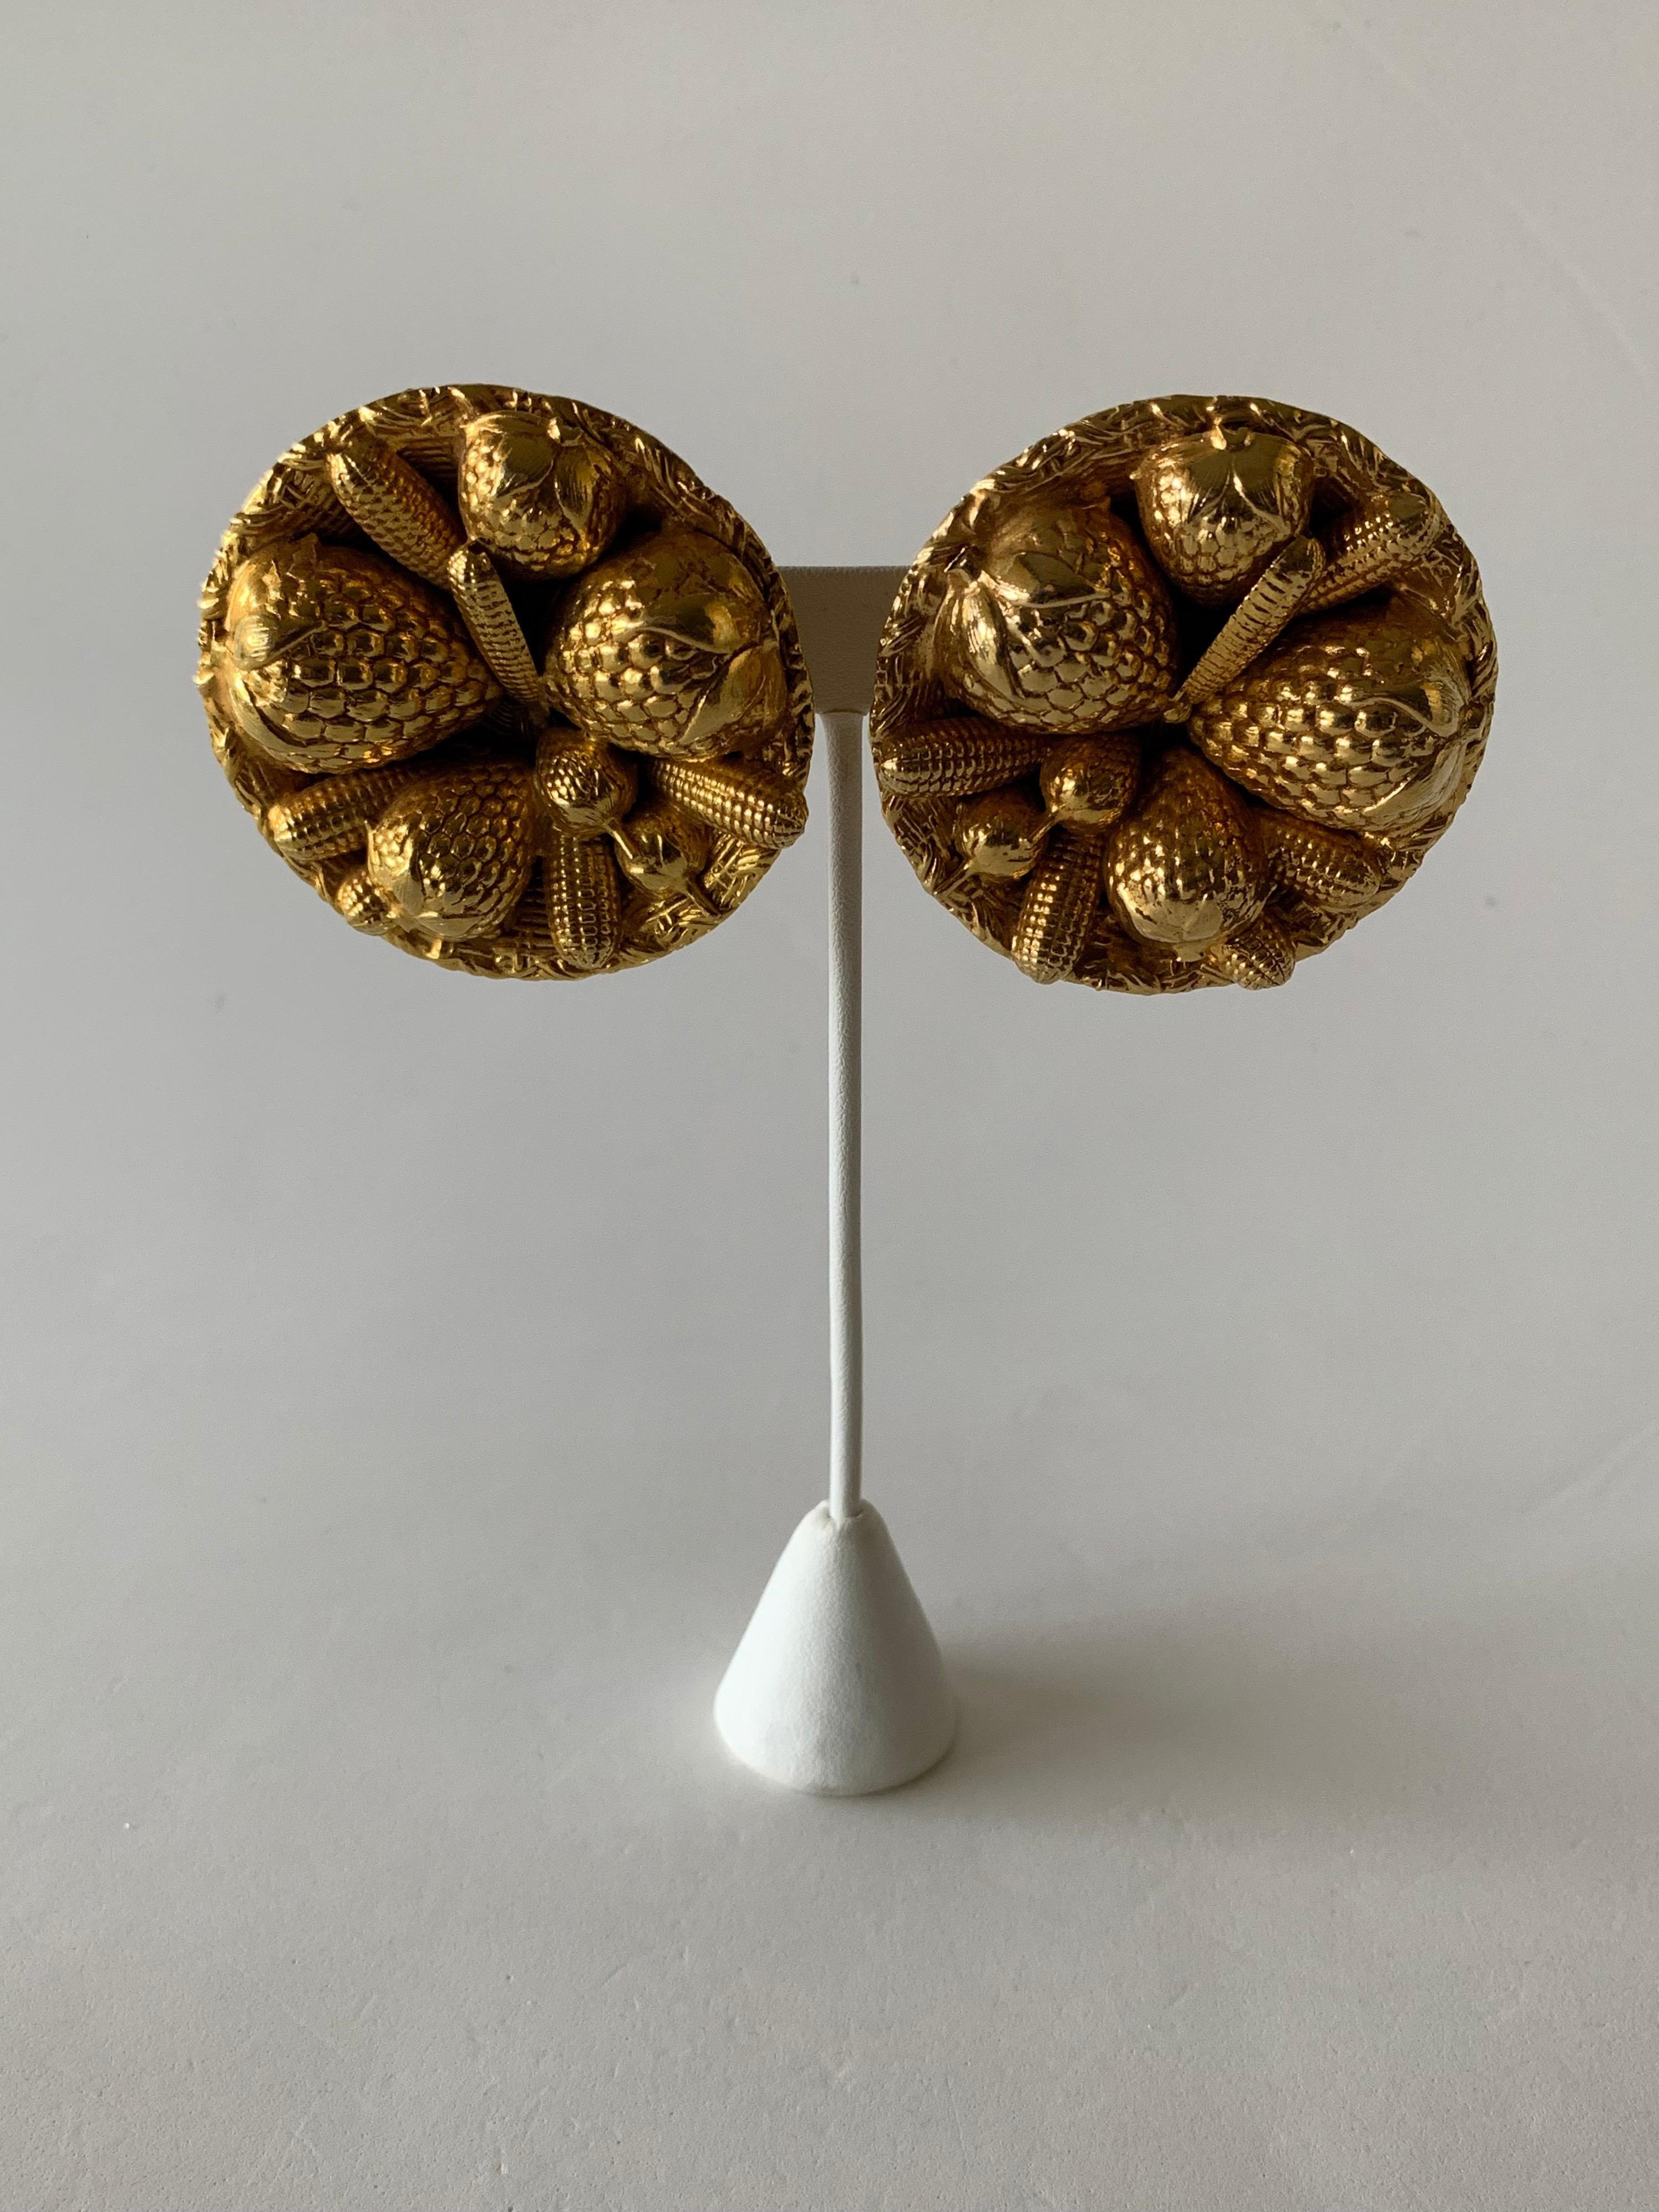 Une paire unique et élégante de boucles d'oreilles vintage en métal doré par le designer français Dominque Aurientis - les grandes boucles d'oreilles sont composées de métal doré et représentent un grand panier de paille rempli de fraises. Les